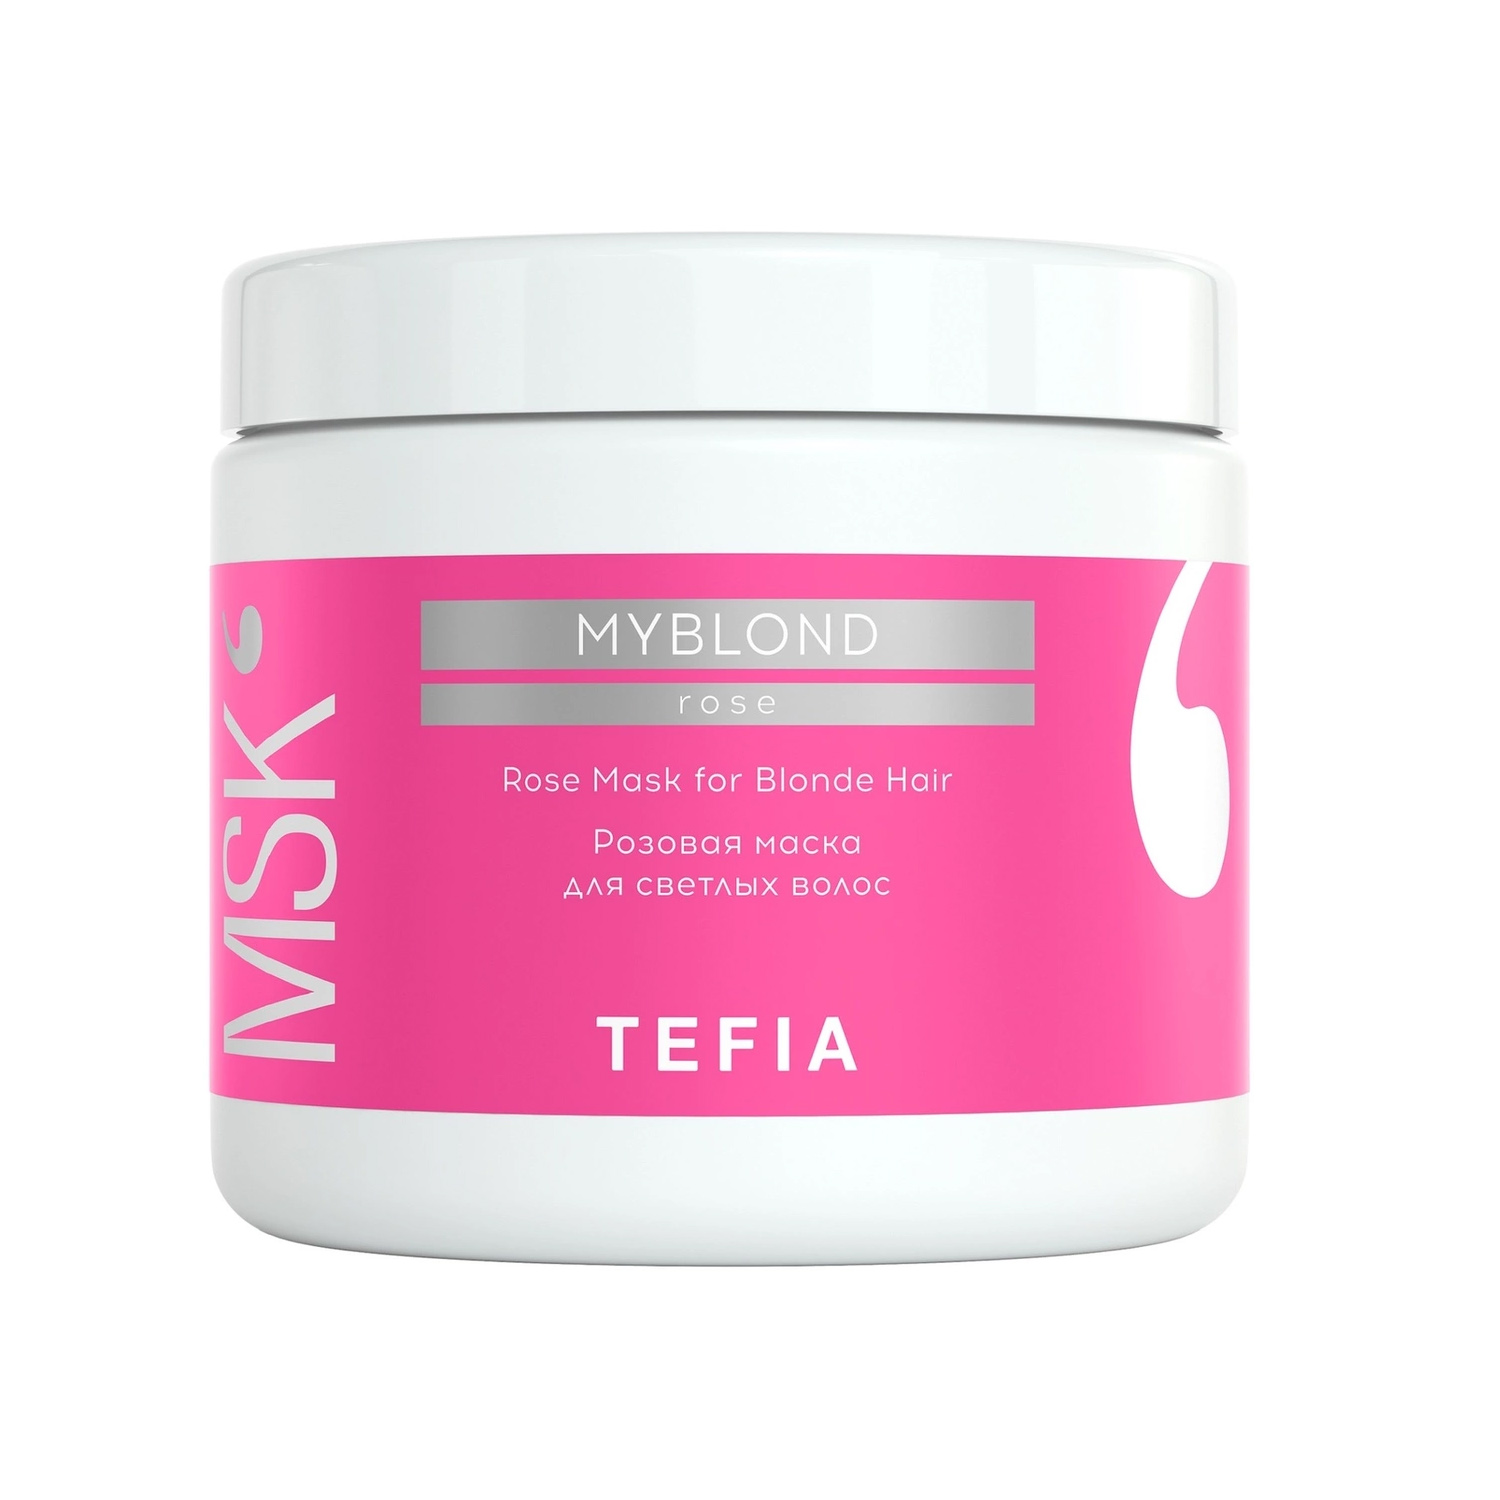 Tefia Розовая маска для светлых волос, 500 мл (Tefia, My Blo